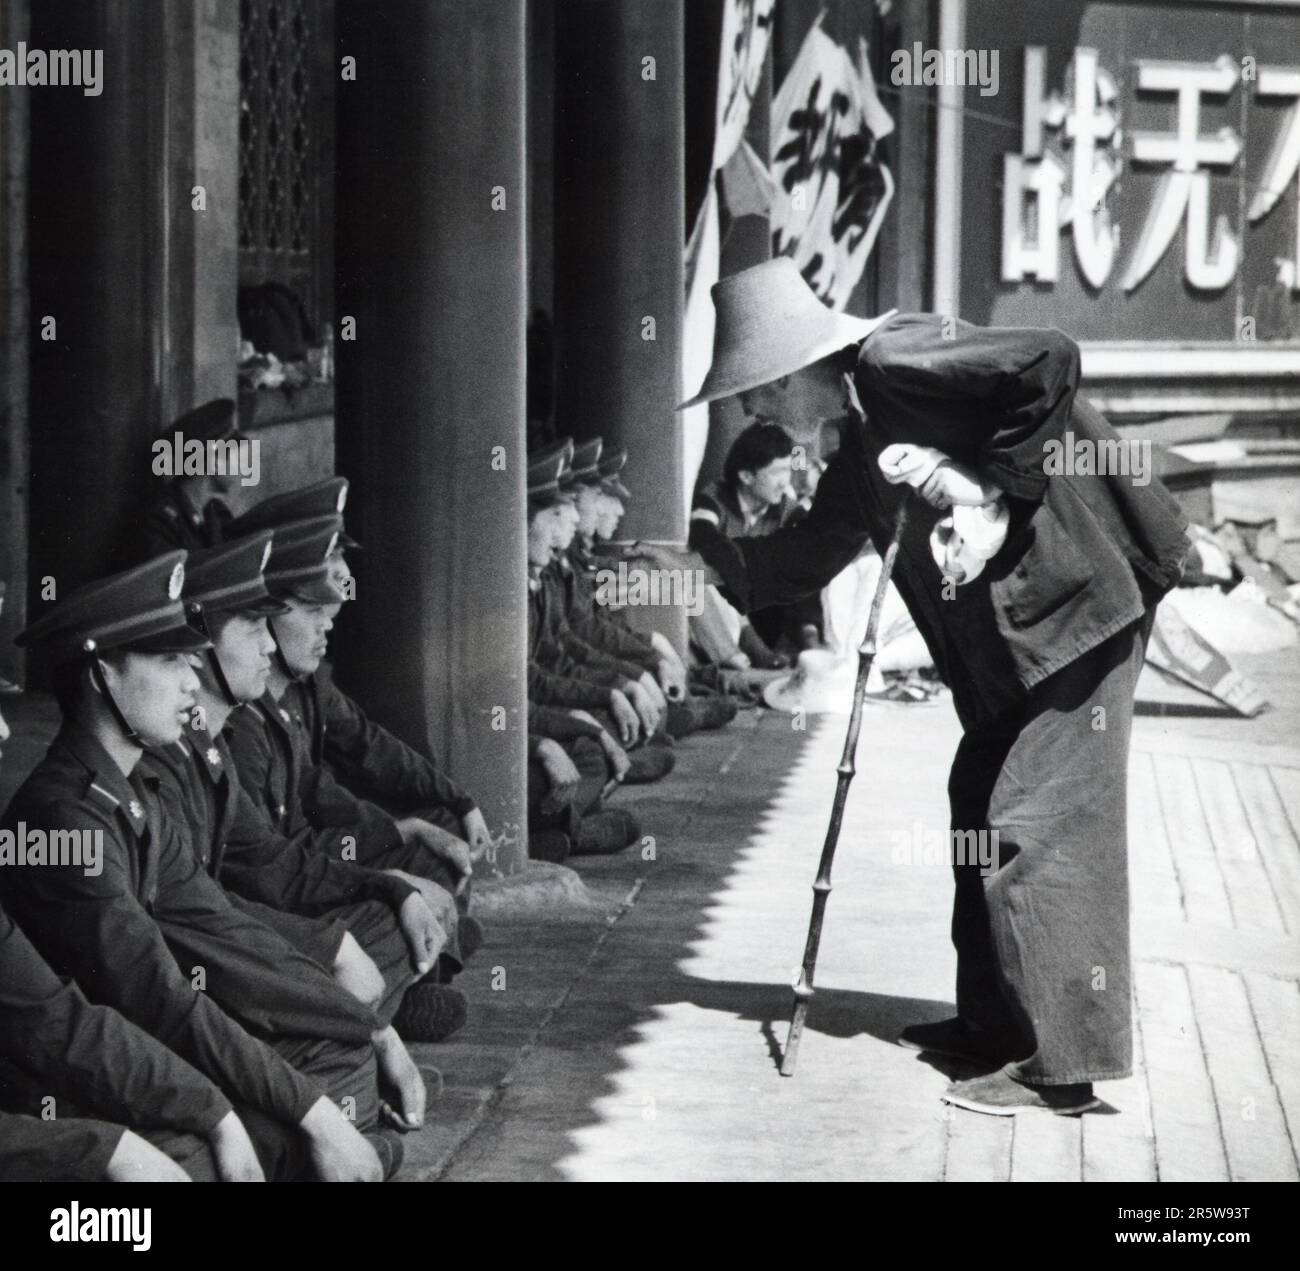 Un vecchio uomo cinese insegna soldati di fronte a Zhongnanhai, il quartier generale del Partito comunista cinese a Pechino, Cina, il 26 maggio 1989. Proprio in fondo alla strada, i manifestanti pro-democrazia occupavano Piazza Tiananmen. Foto Stock